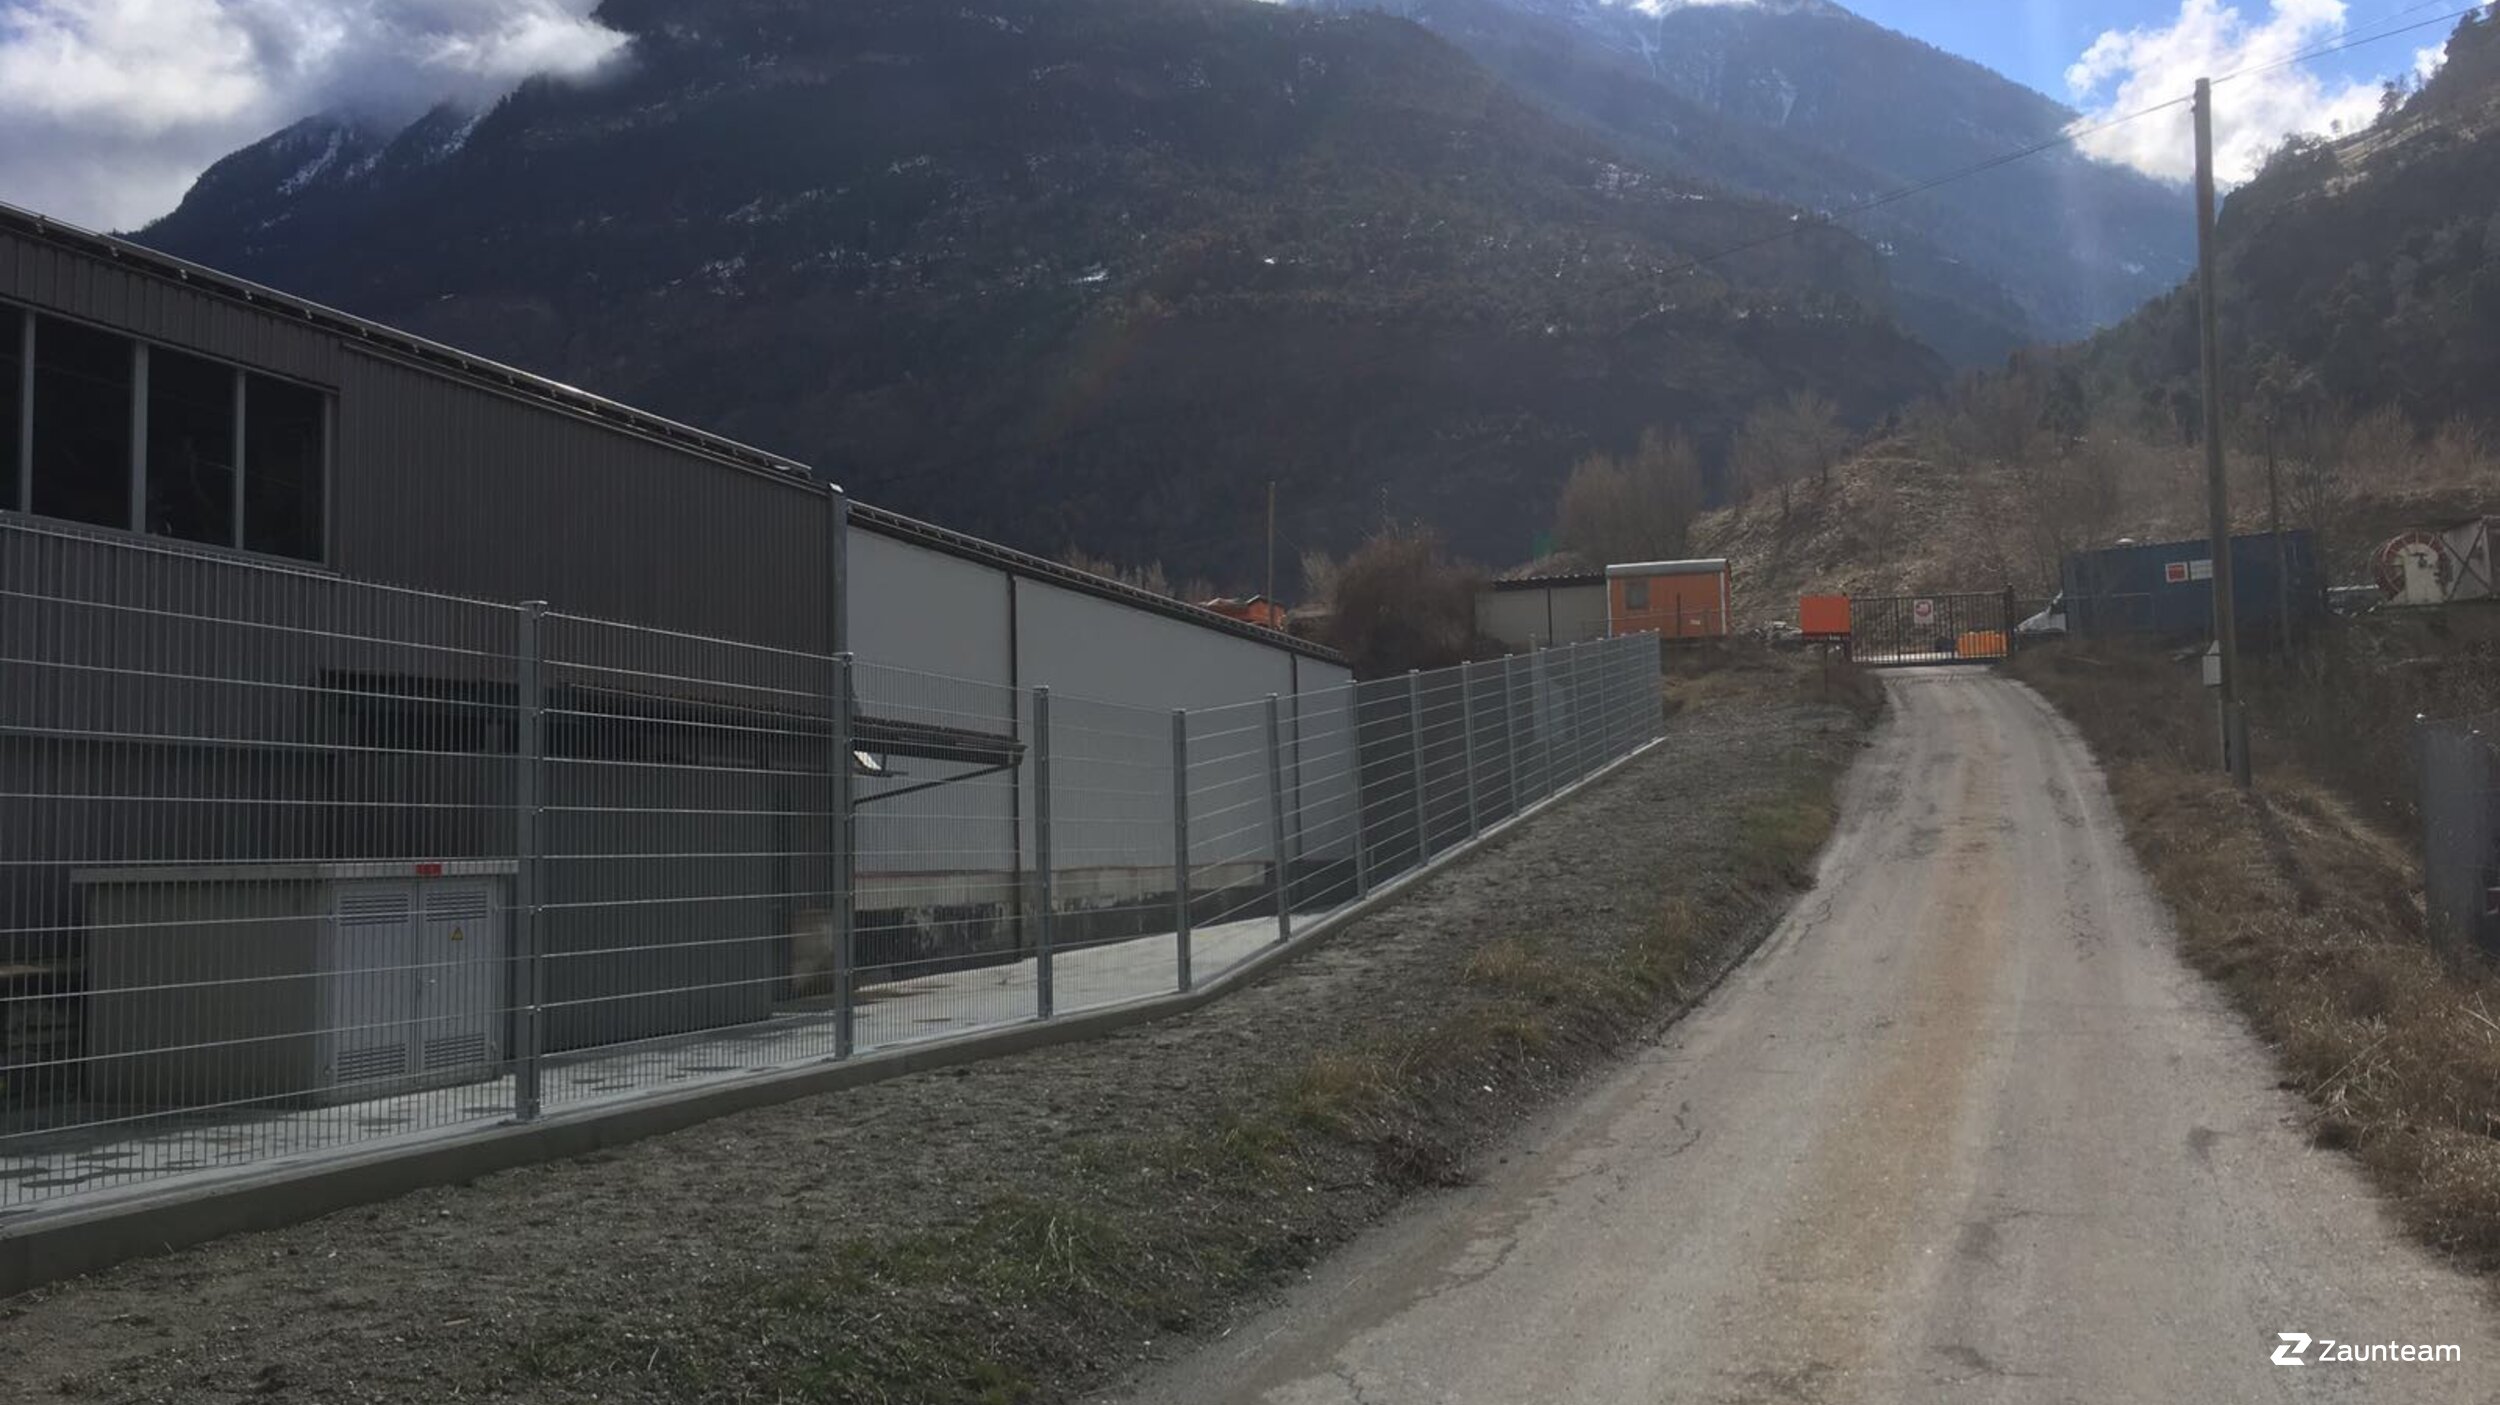 Clôture en panneau double fil de 2017 à 3900 Brig Suisse de Zaunteam Wallis / Swissclôture Valais.